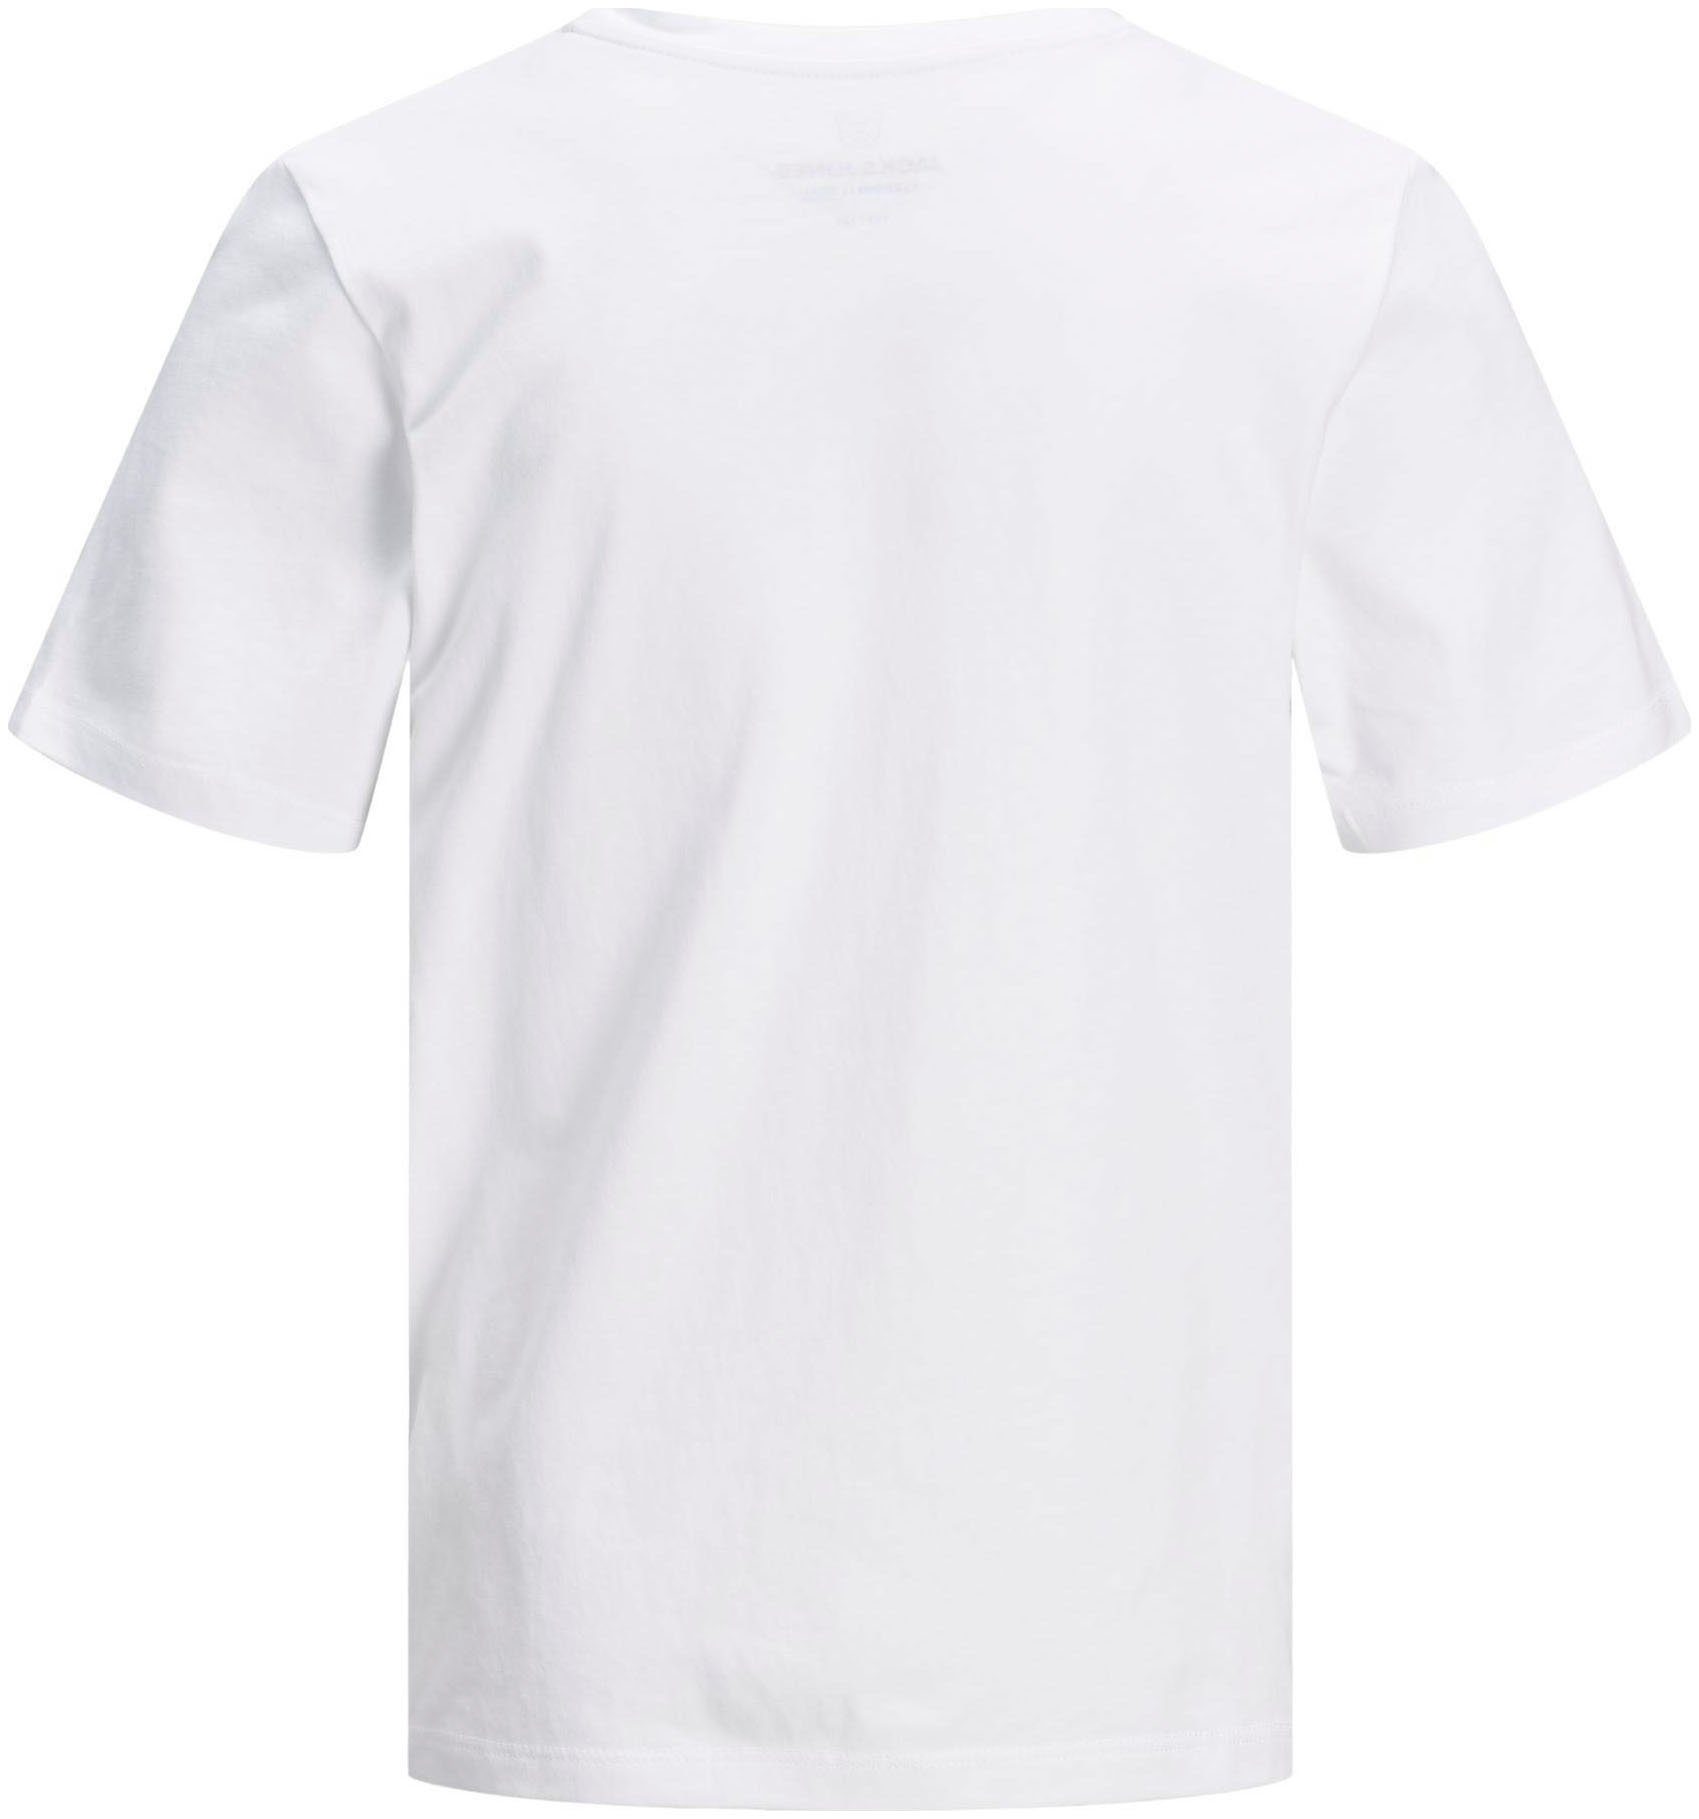 Jack & Jones Junior BASIC white TEE JJEORGANIC T-Shirt SS